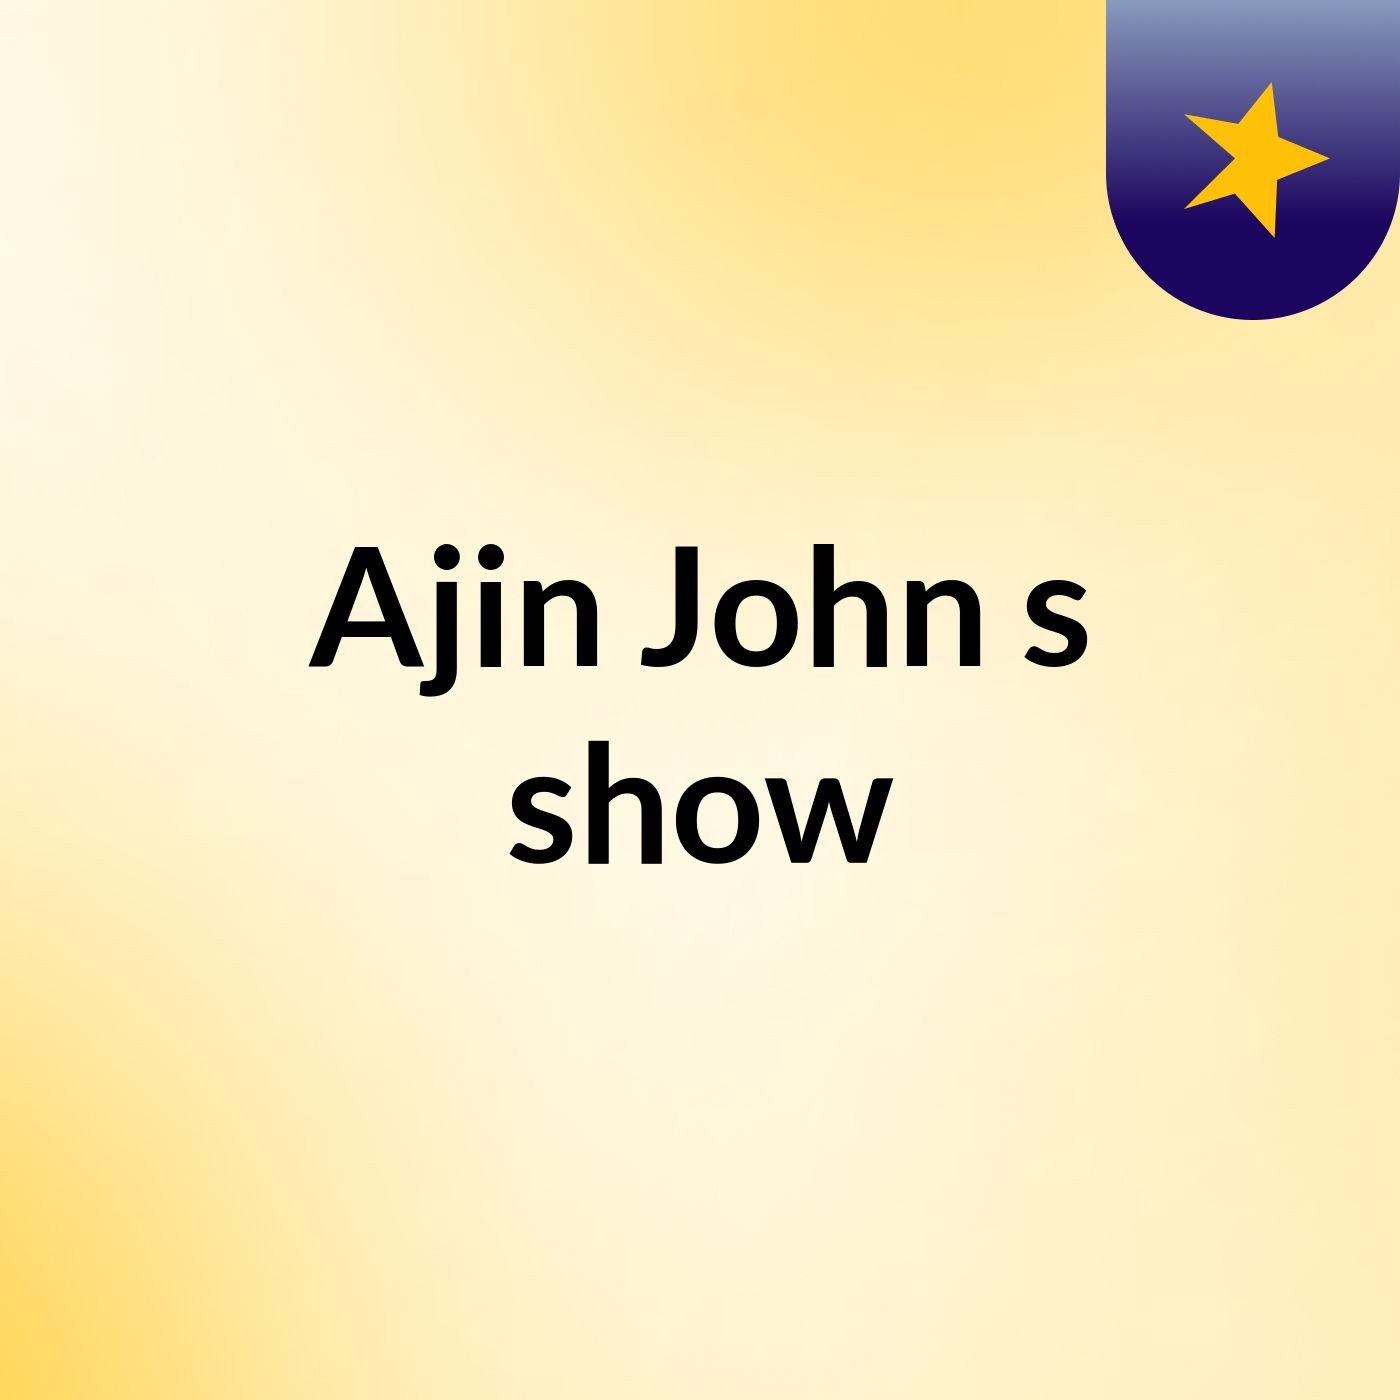 Ajin John's show